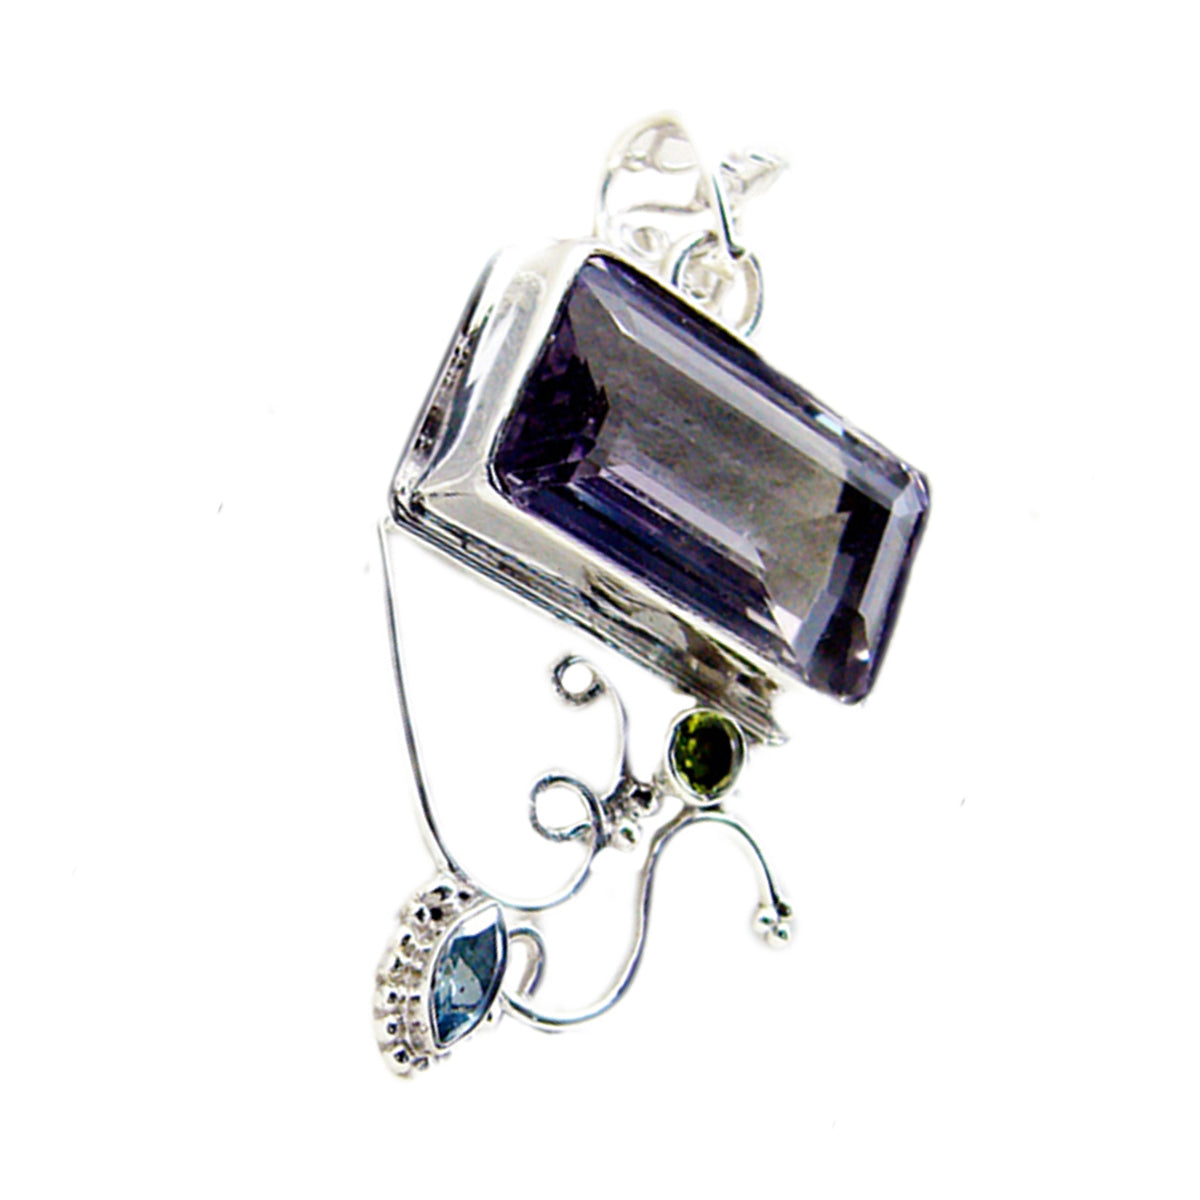 Подвеска из серебра 1221 пробы с фиолетовым аметистом Riyo, восьмиугольный граненый драгоценный камень, подарок на день рождения